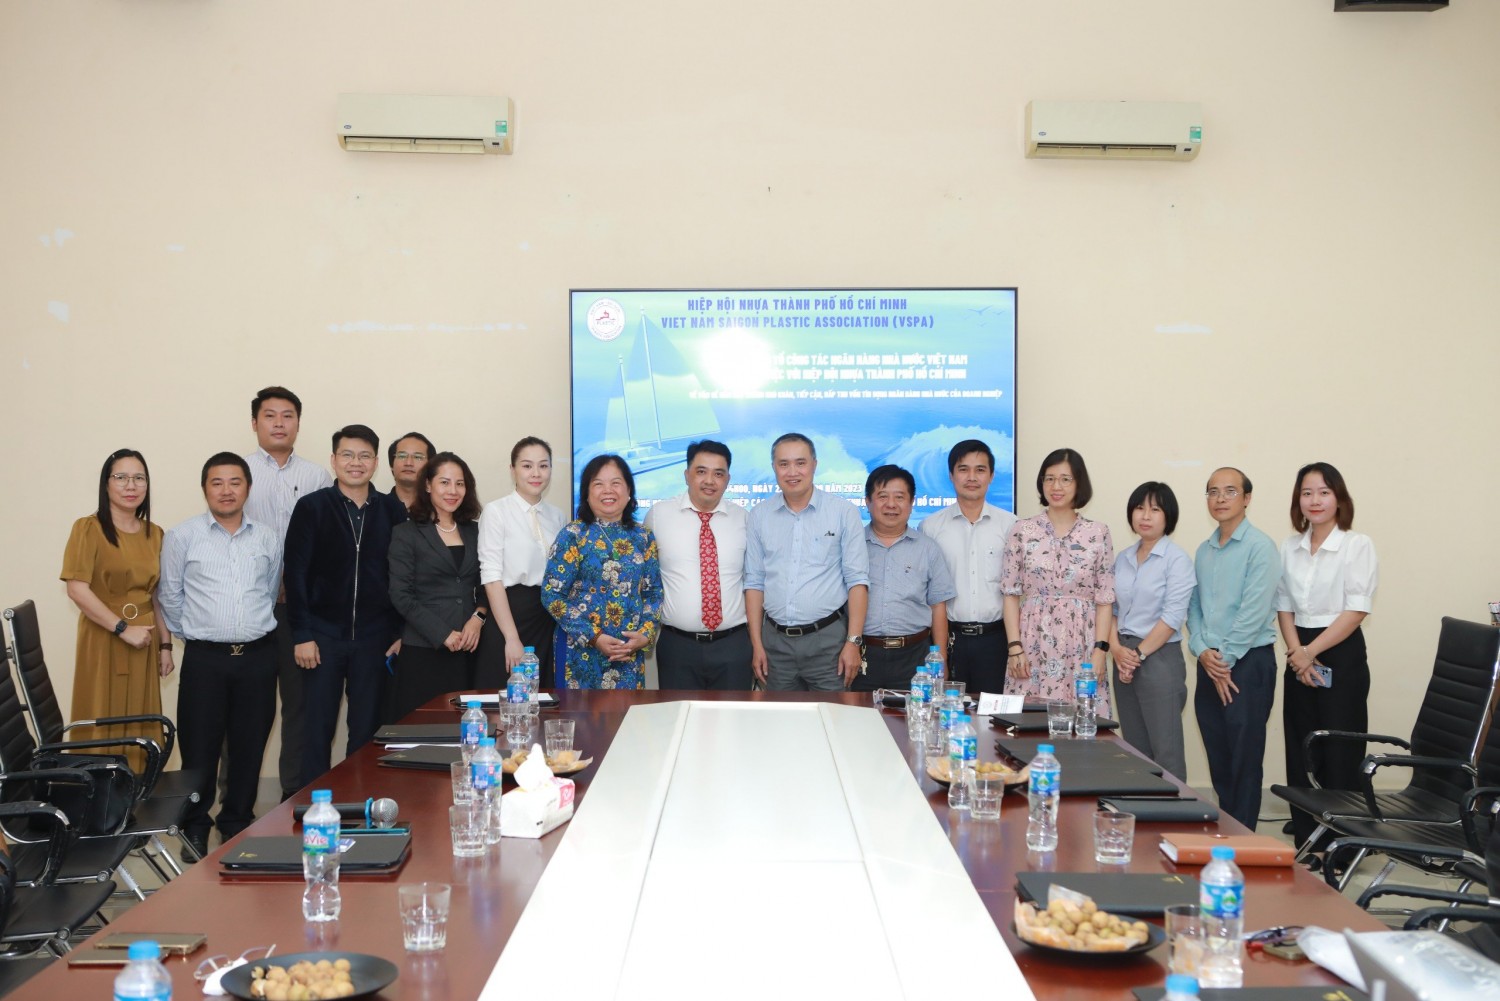 Tổ công tác Ngân hàng nhà nước làm việc với Hiệp hội nhựa Tp. Hồ Chí Minh